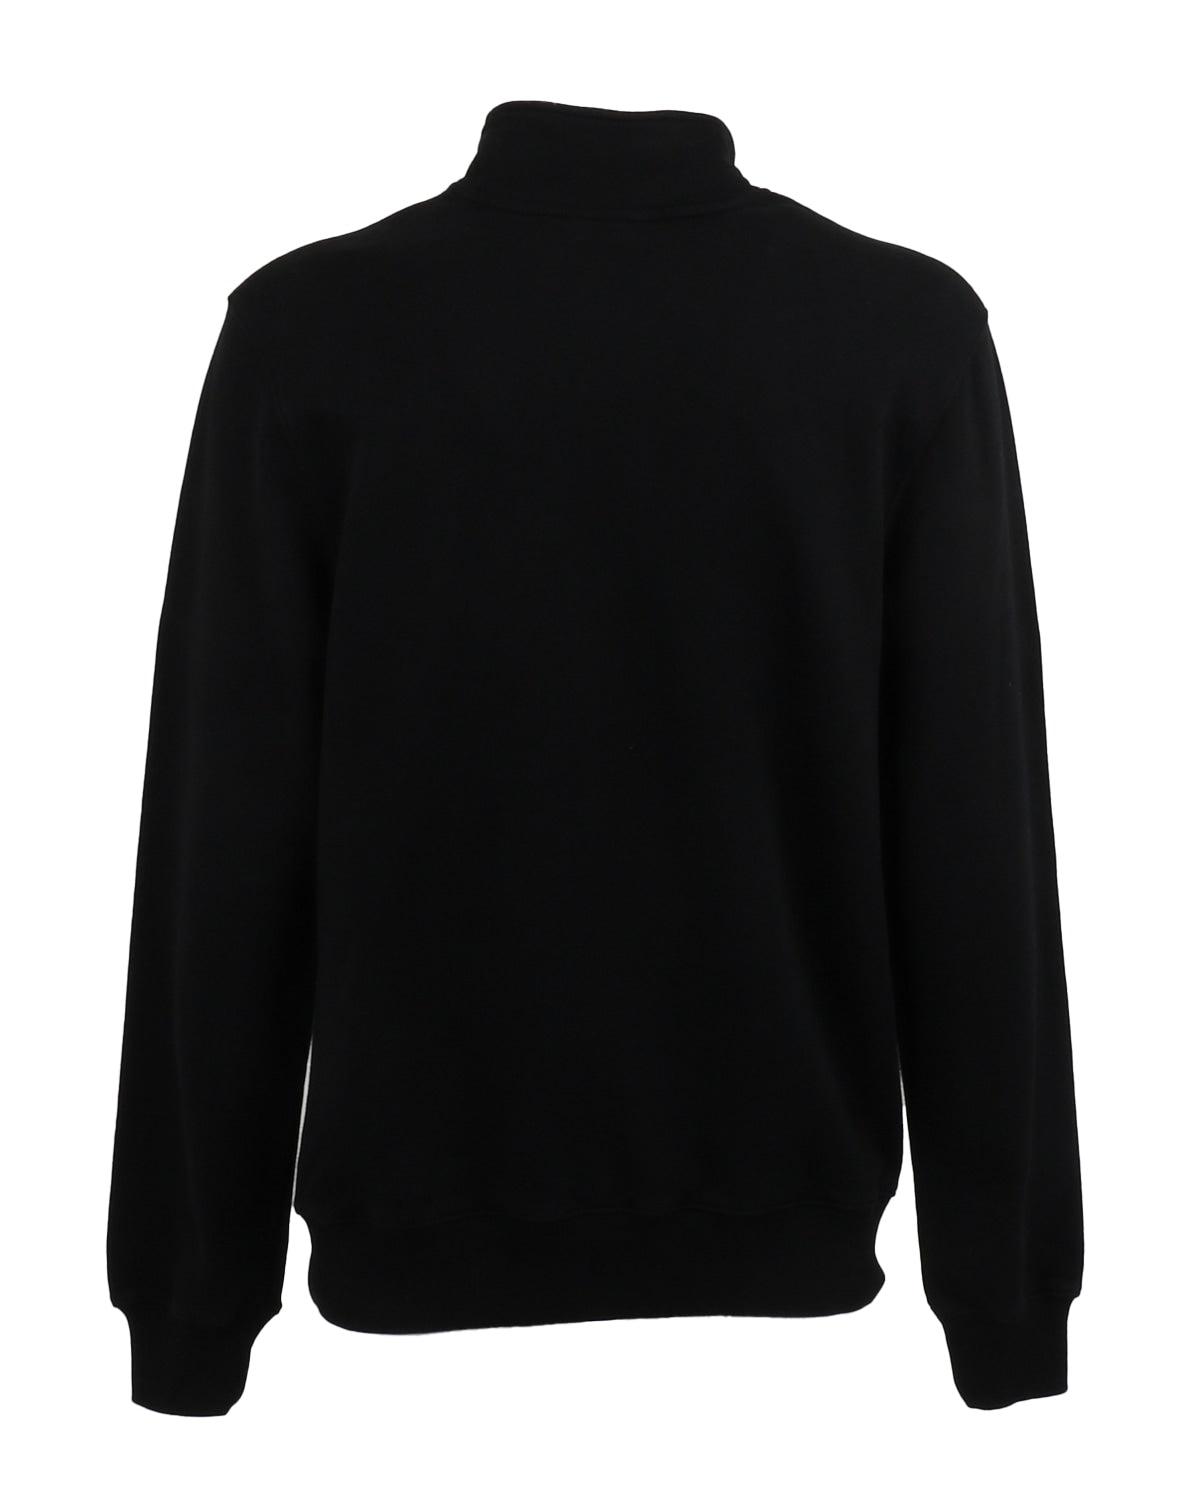 olaf hussein_olaf italic zip mock sweater_black_2_3